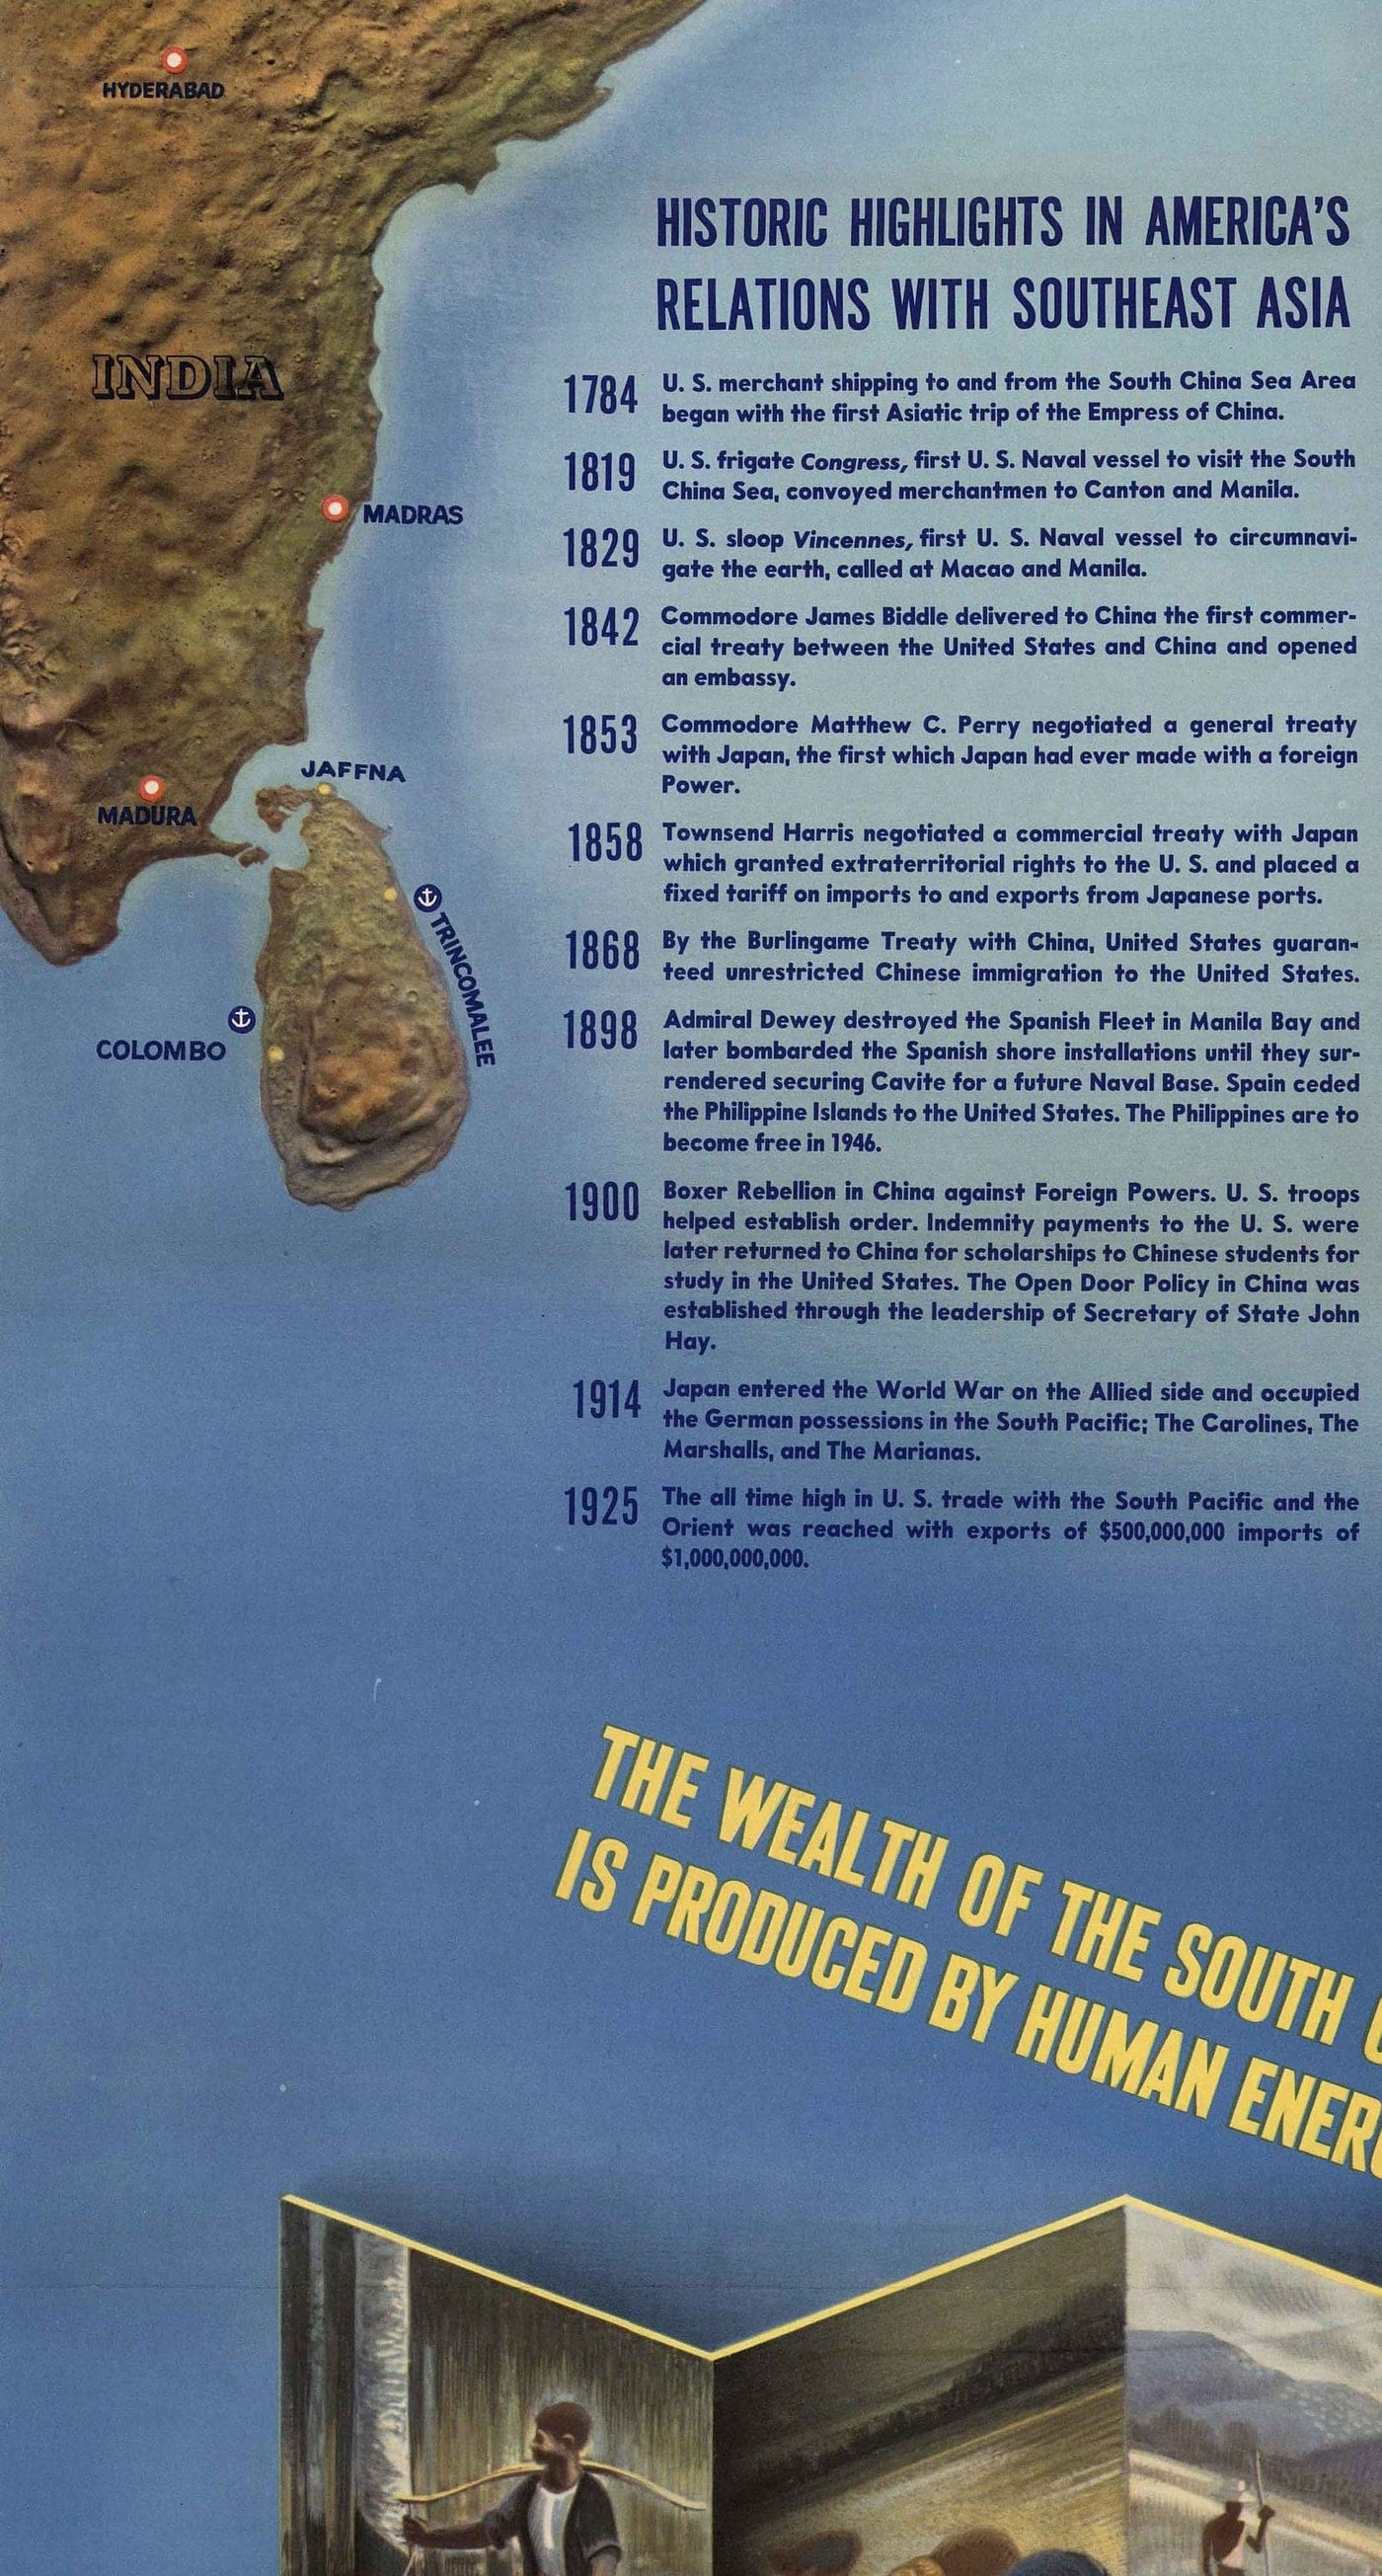 MAPOLE DE LA Guerre mondiale de l'ancienne: mer de Chine méridionale, 1944 - Navwarmap No.2 - Asie du Sud-Est, Indonésie, Malaisie, Thaïlande, Philippines